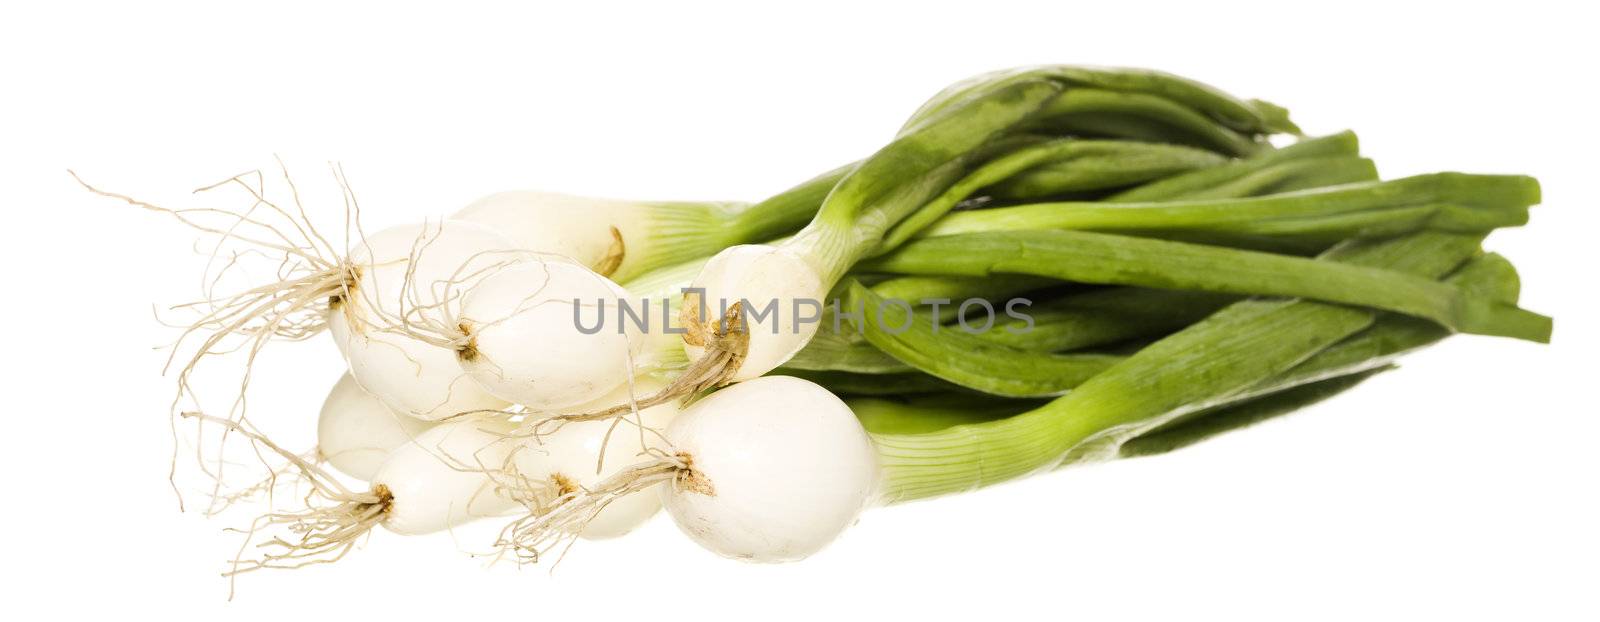 Spring Onion by gemenacom